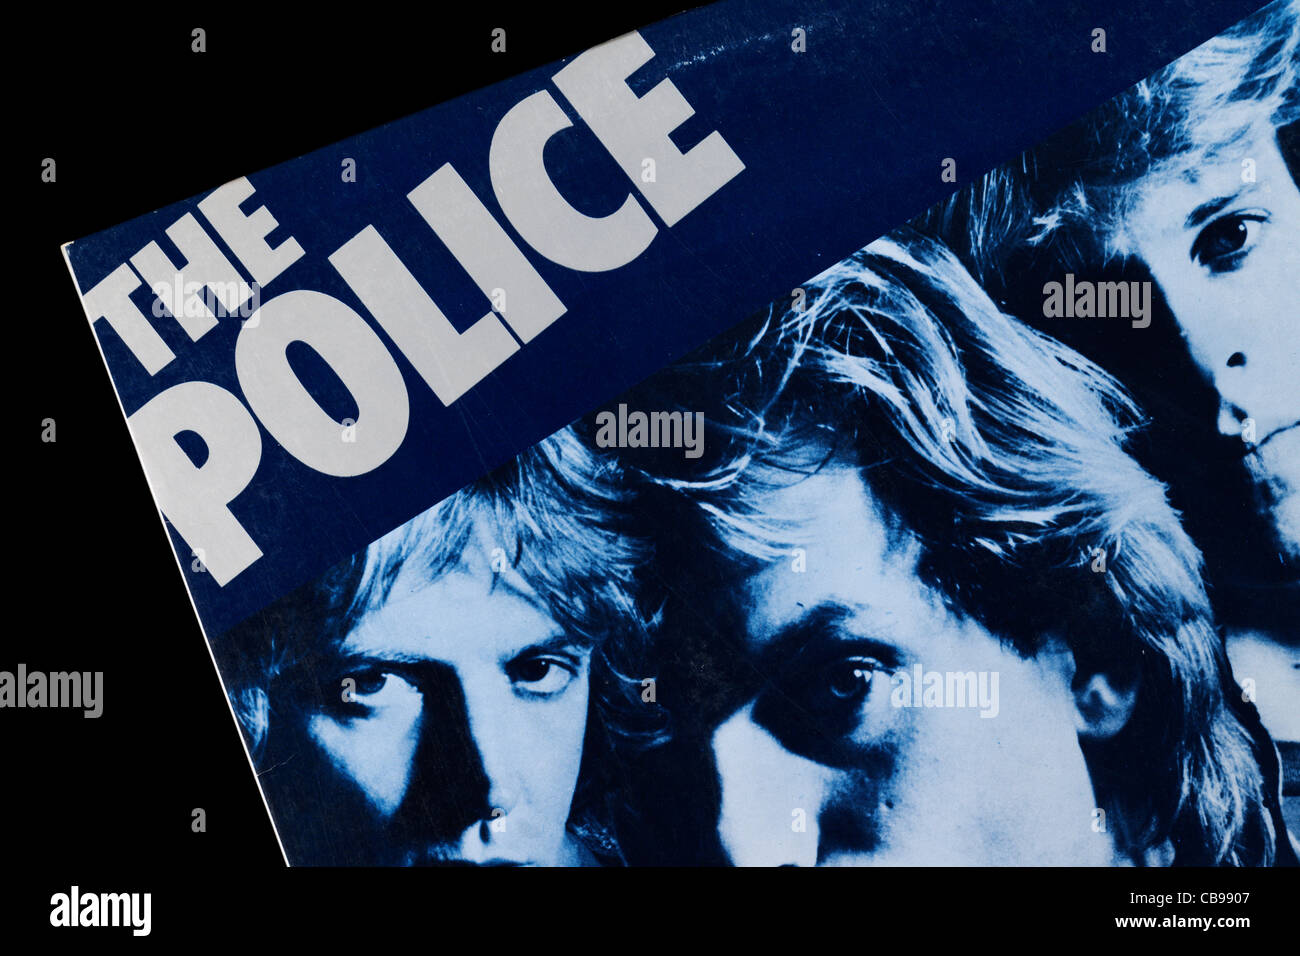 Reggatta de Blanc LP record album cover from the Police. Stock Photo